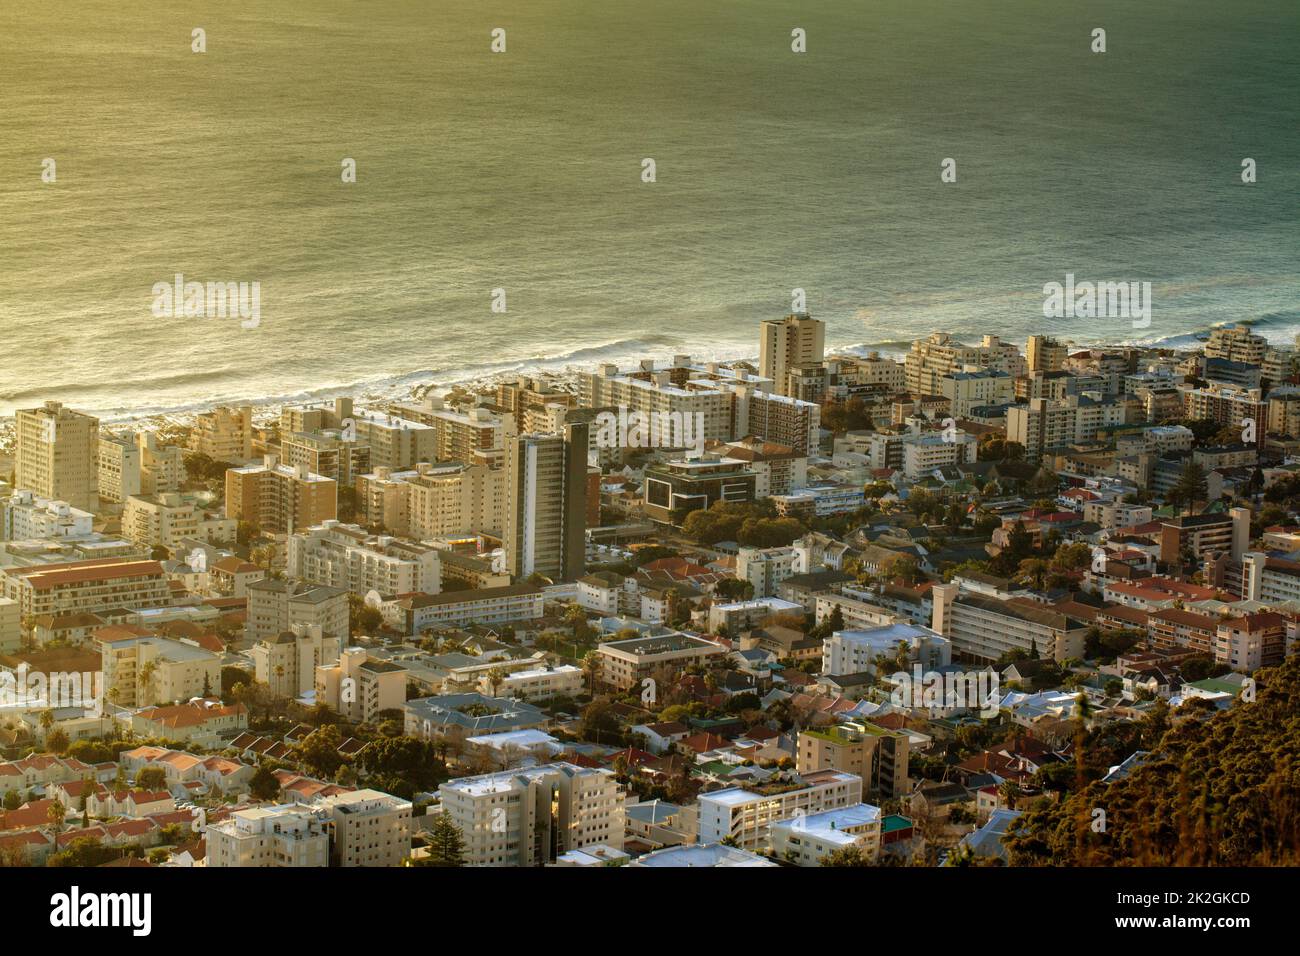 Seapoint am Tag. Eine Luftaufnahme von Sea Point in Kapstadt, der westlichen Provinz Südafrikas. Stockfoto